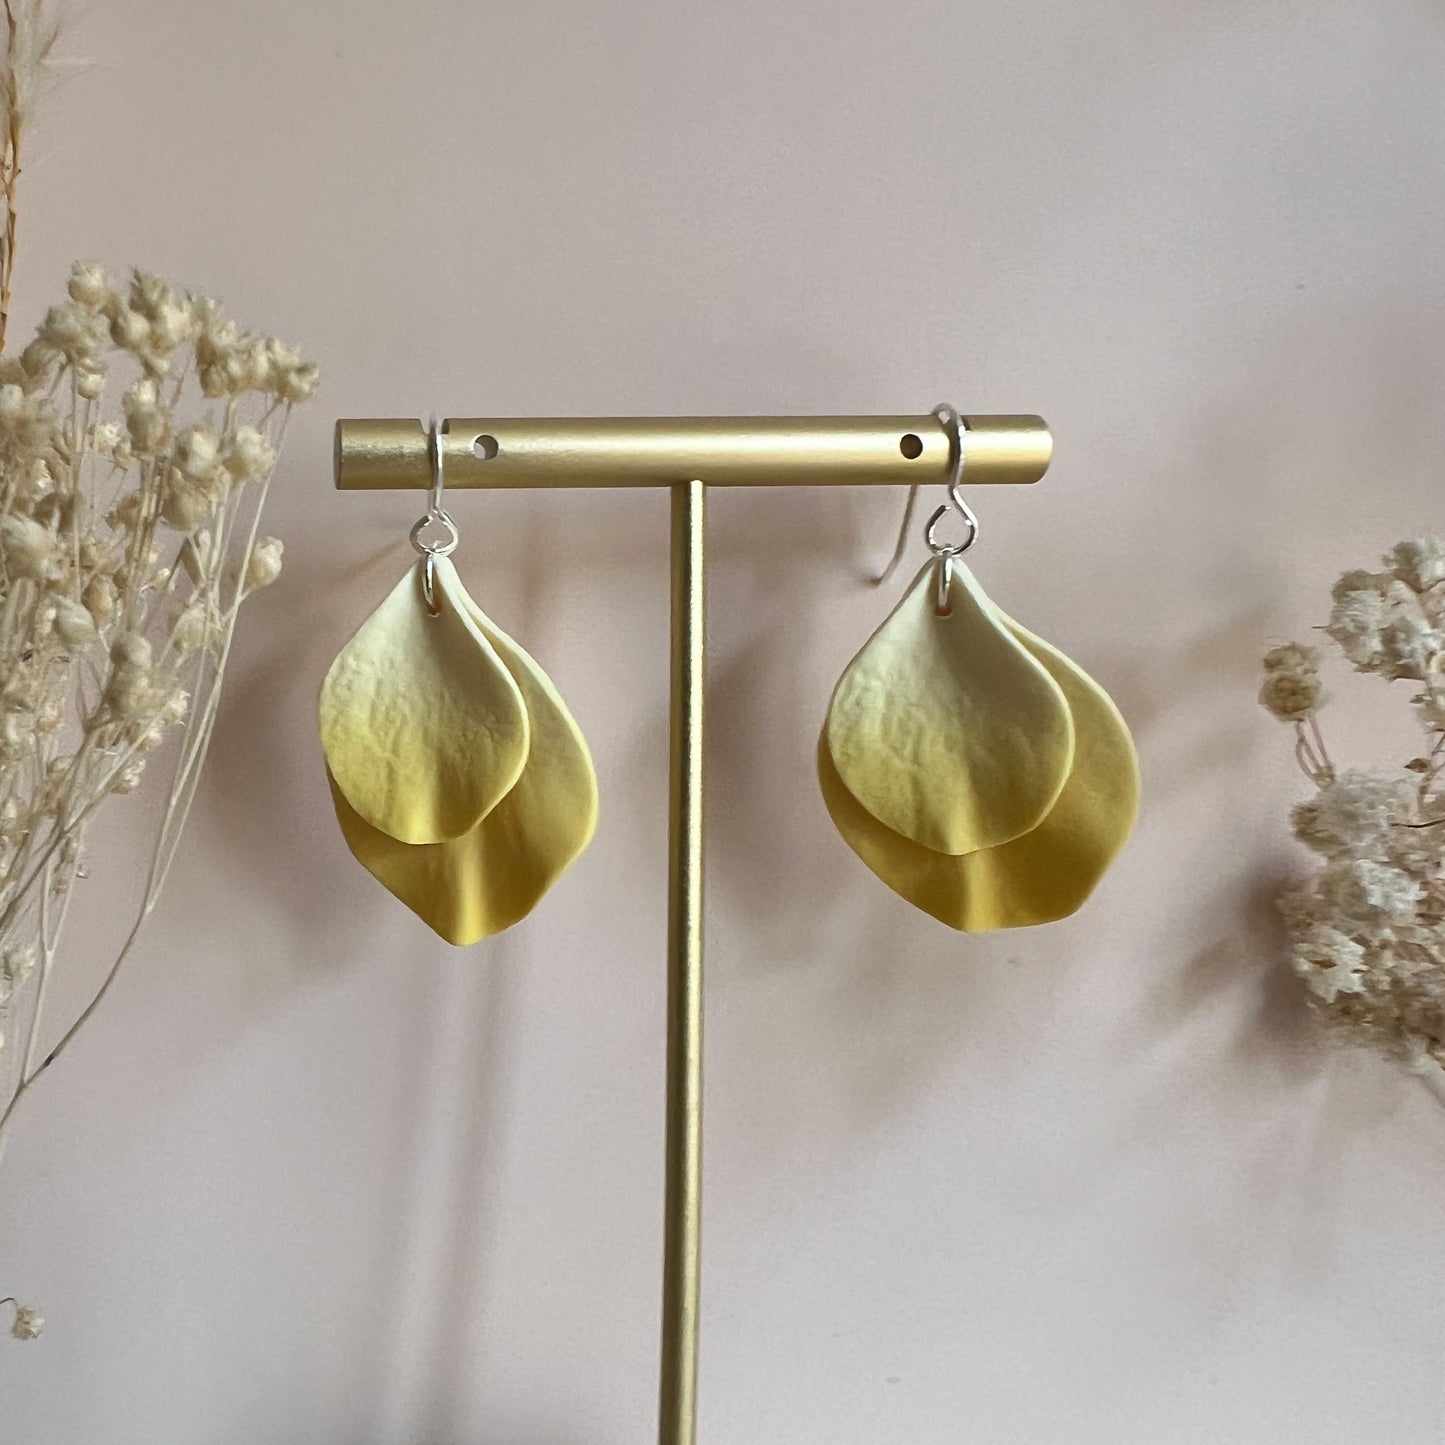 DELEN DOUBLE | medium double rose petal hook earrings in spring yellow